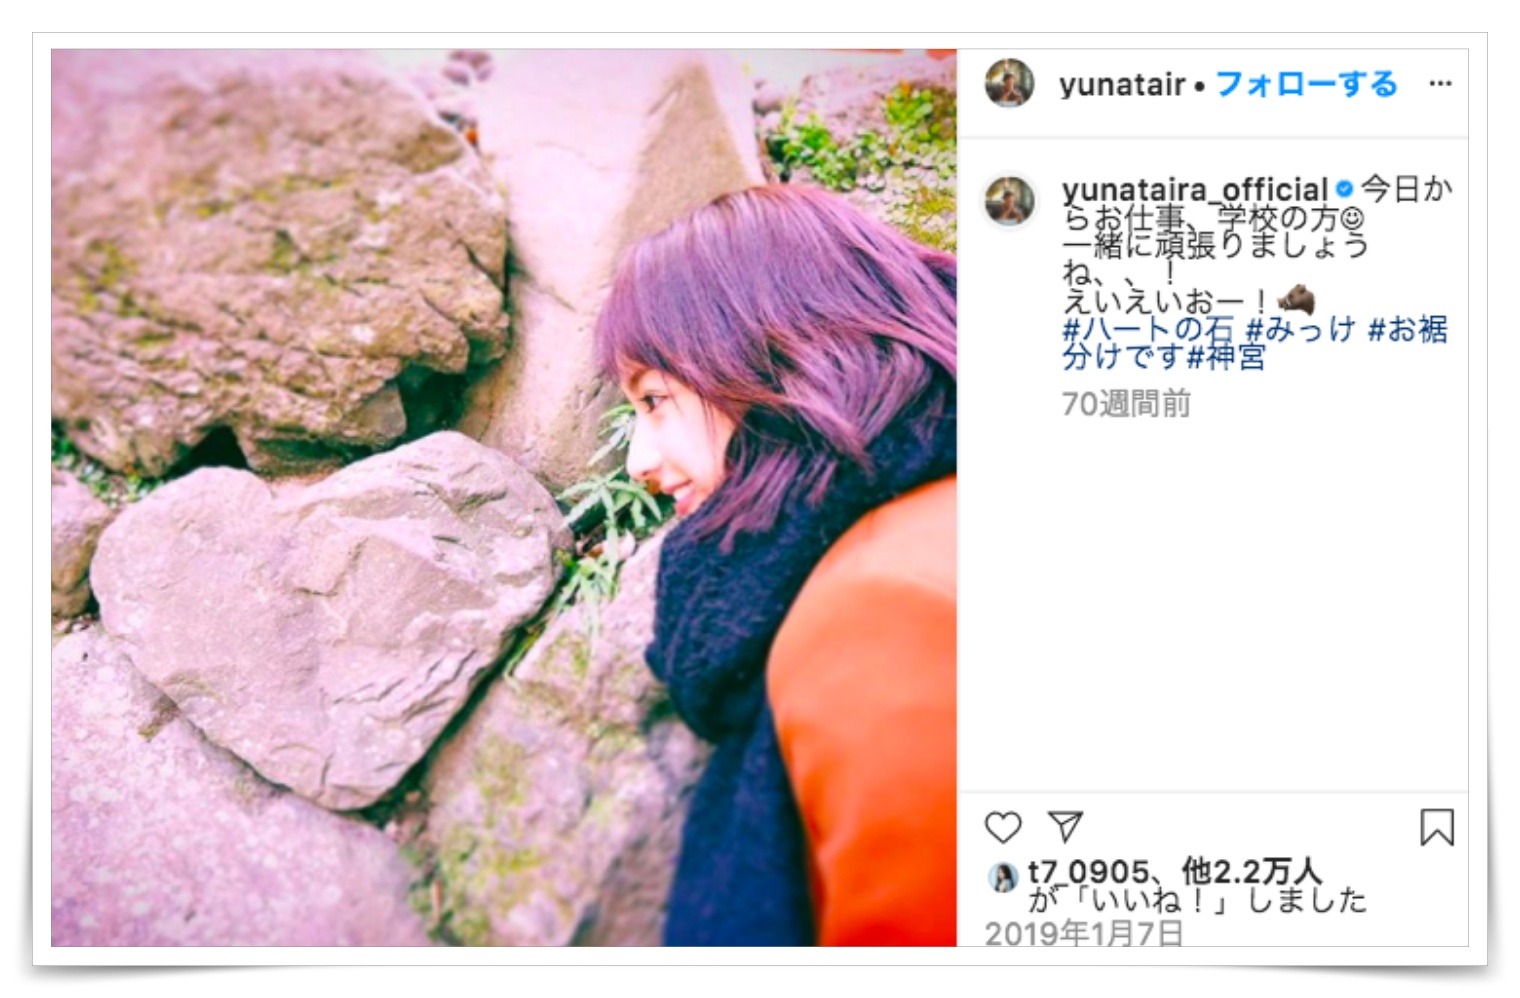 平野紫耀と交際匂わせ画像